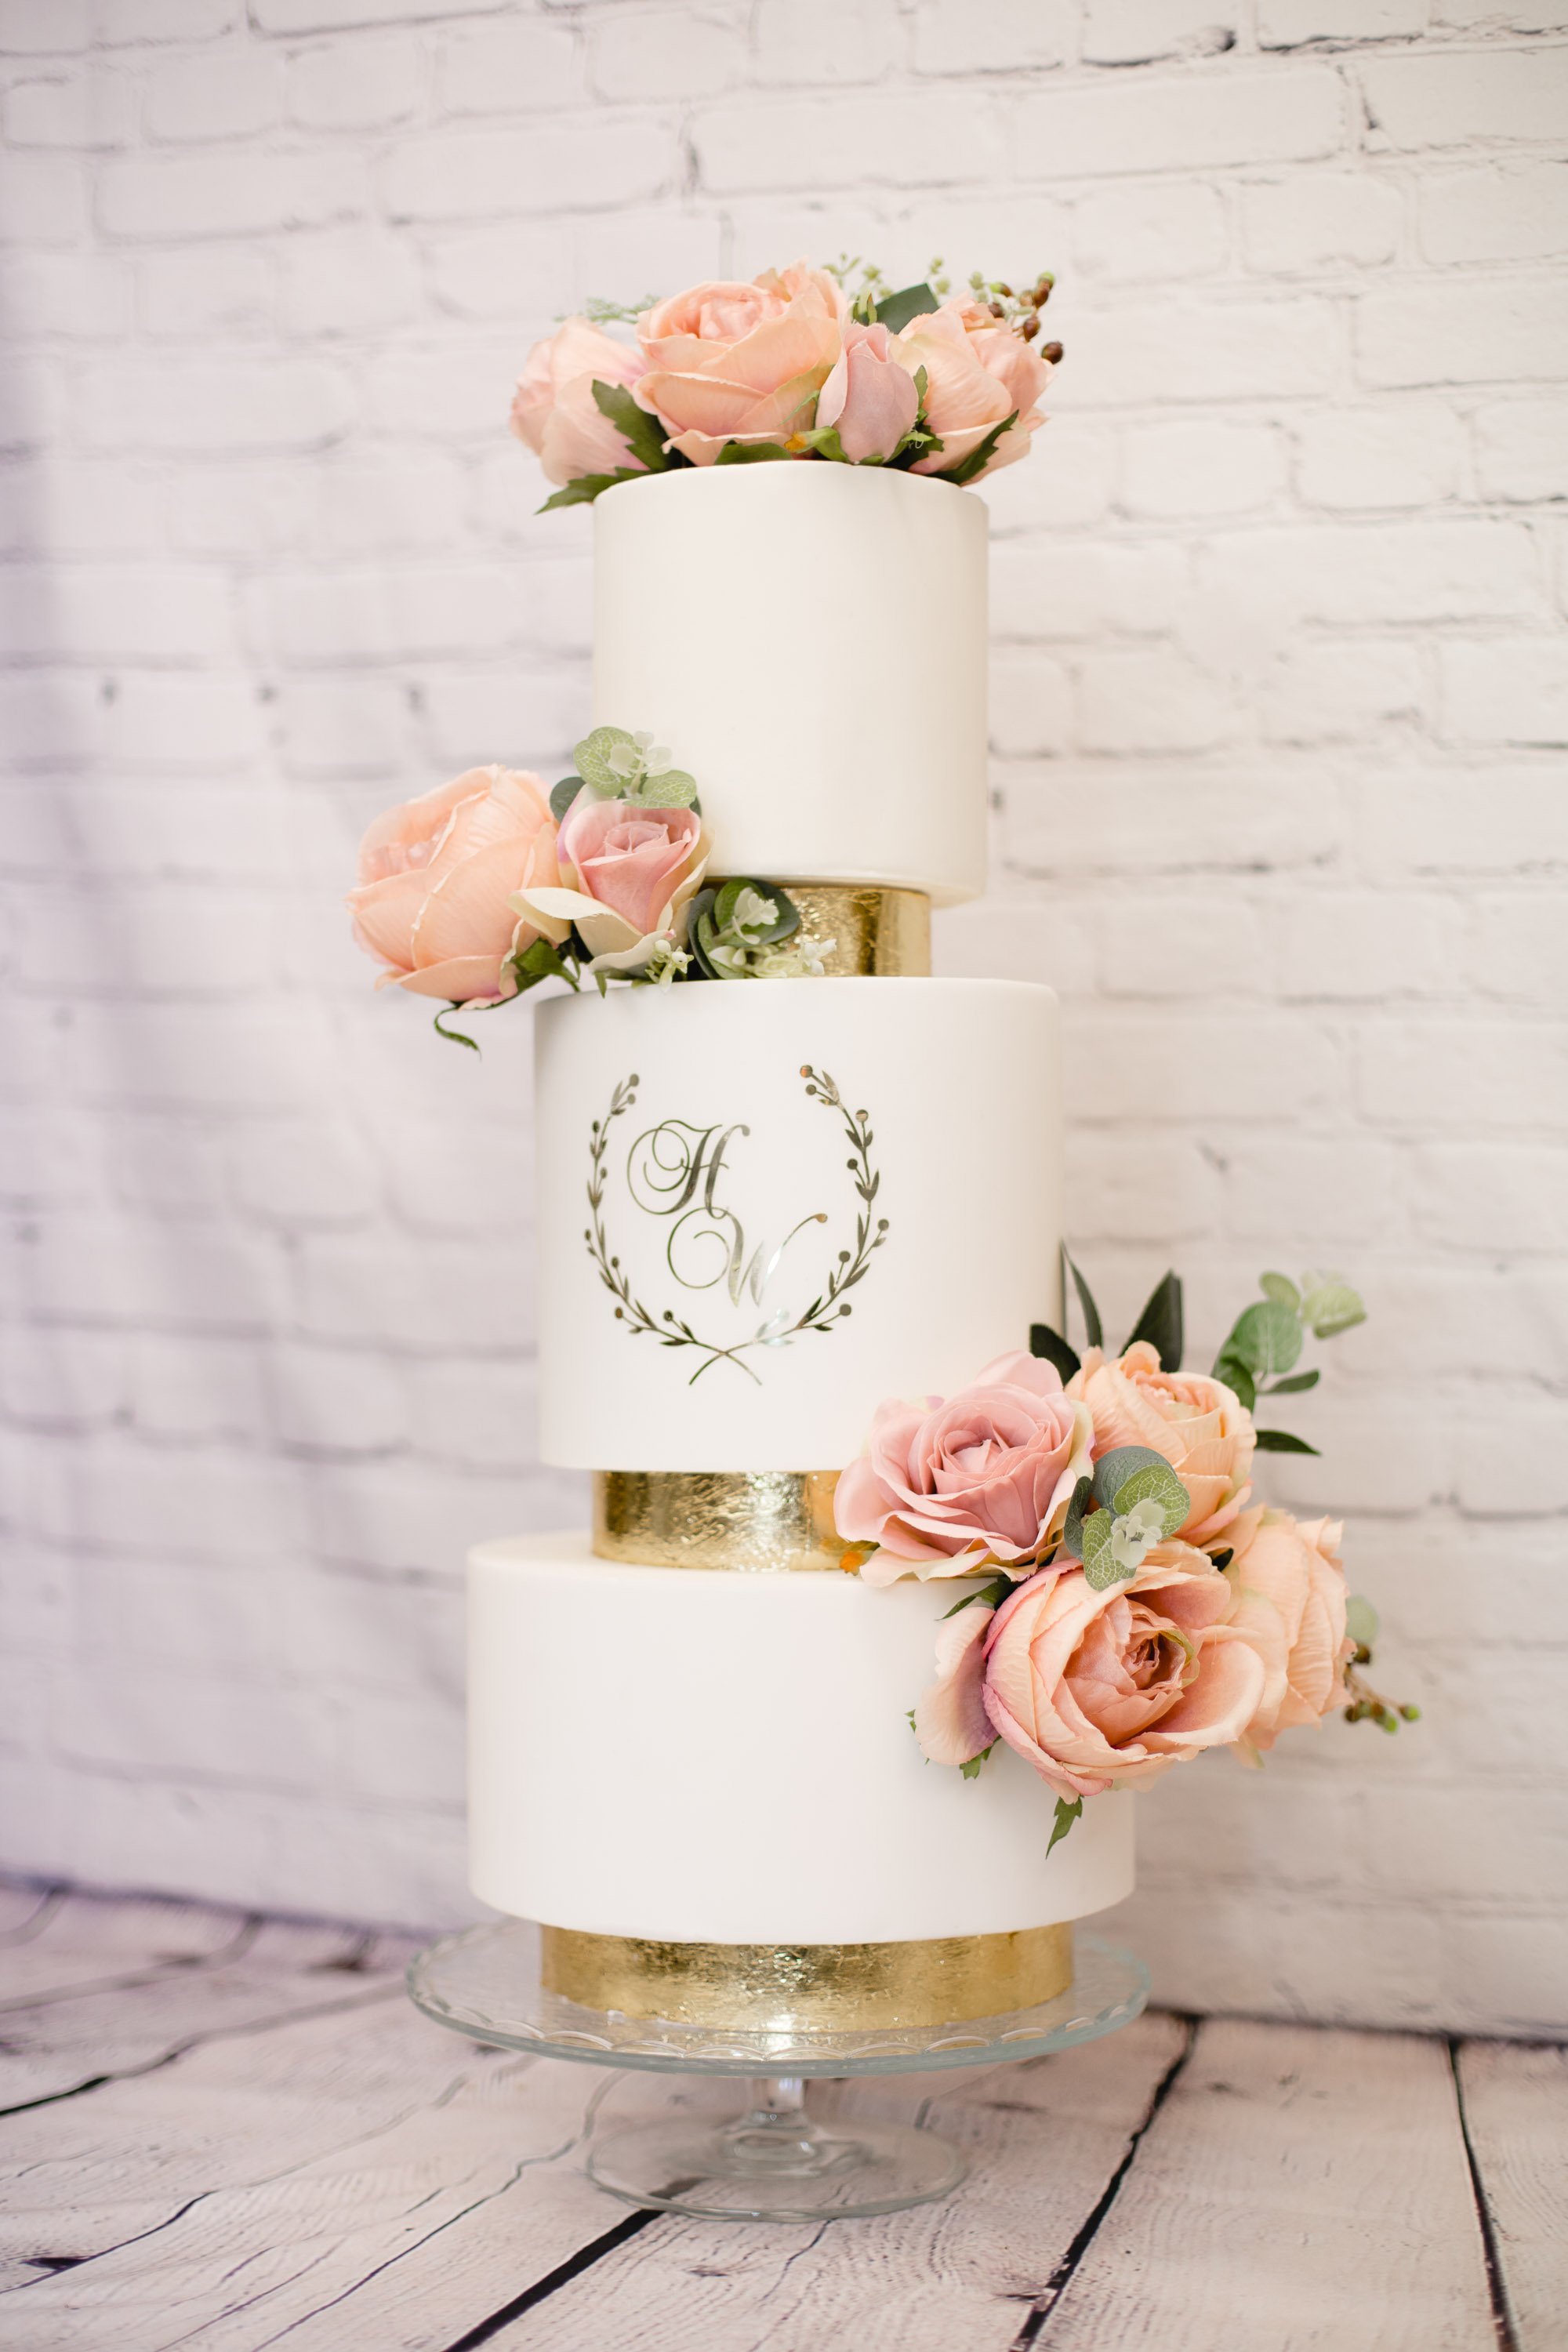 Wedding Cake by Olivia's Cakes.